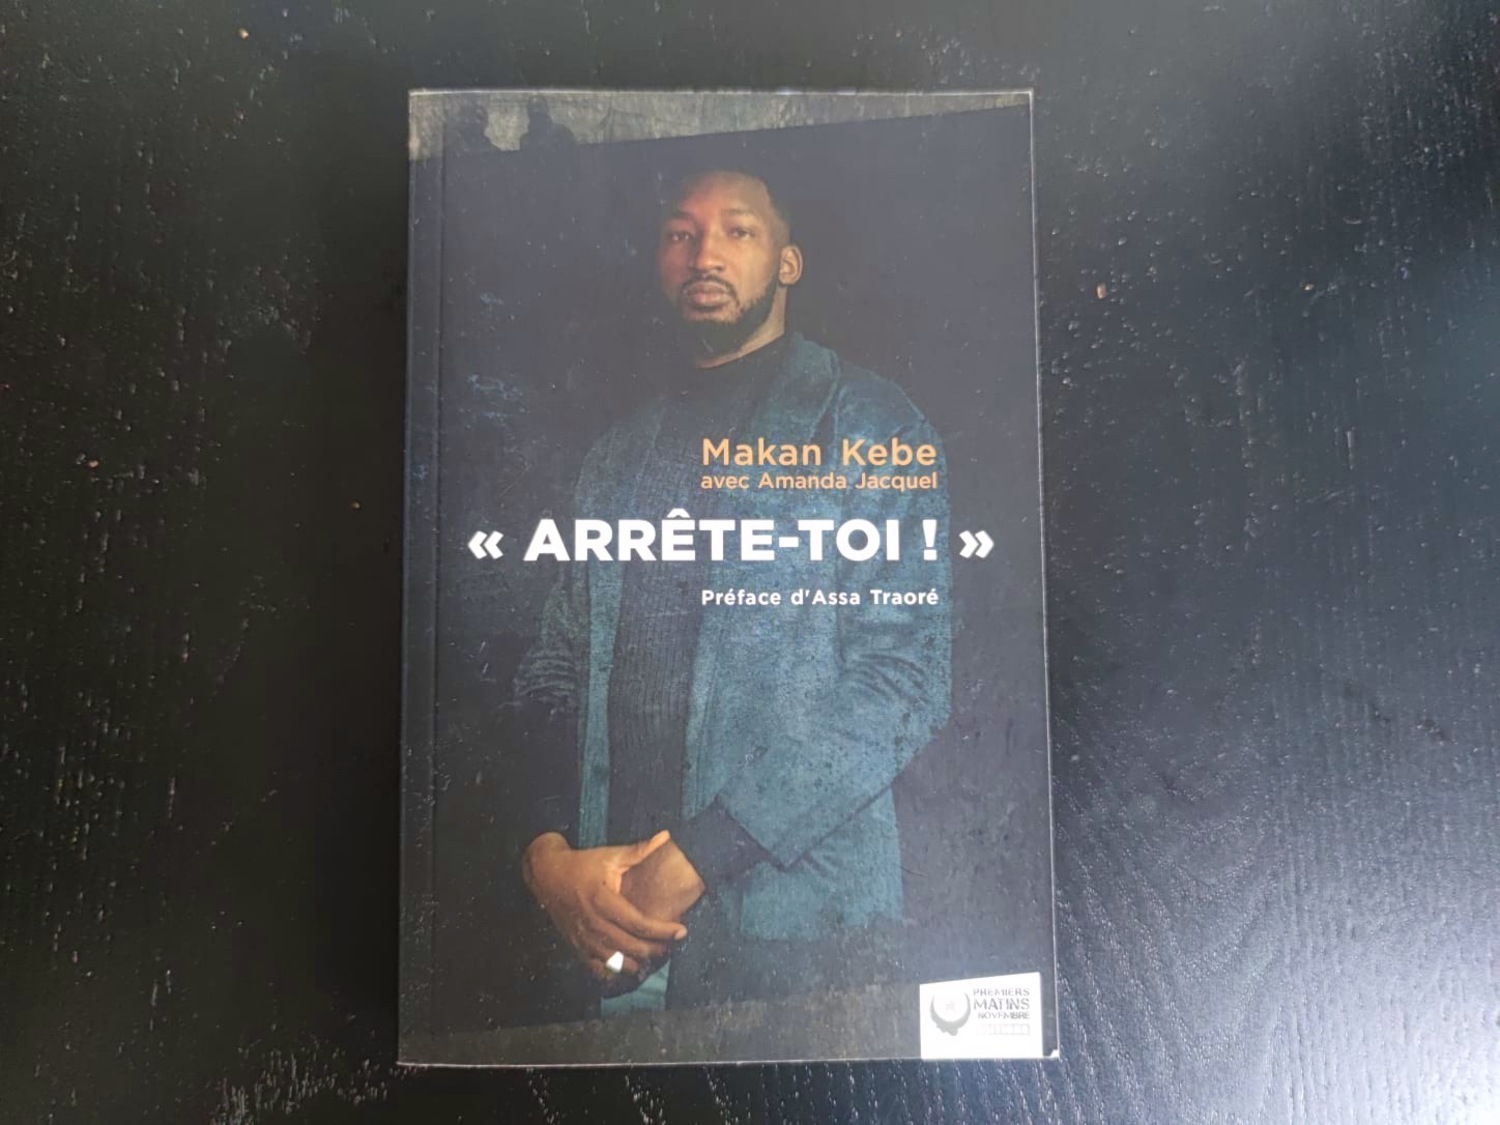 Makan KEBE a publié son premier livre « Arrête-toi ! », le 26 mars 2021, avec la journaliste Amanda JACQUEL © Globe Reporters